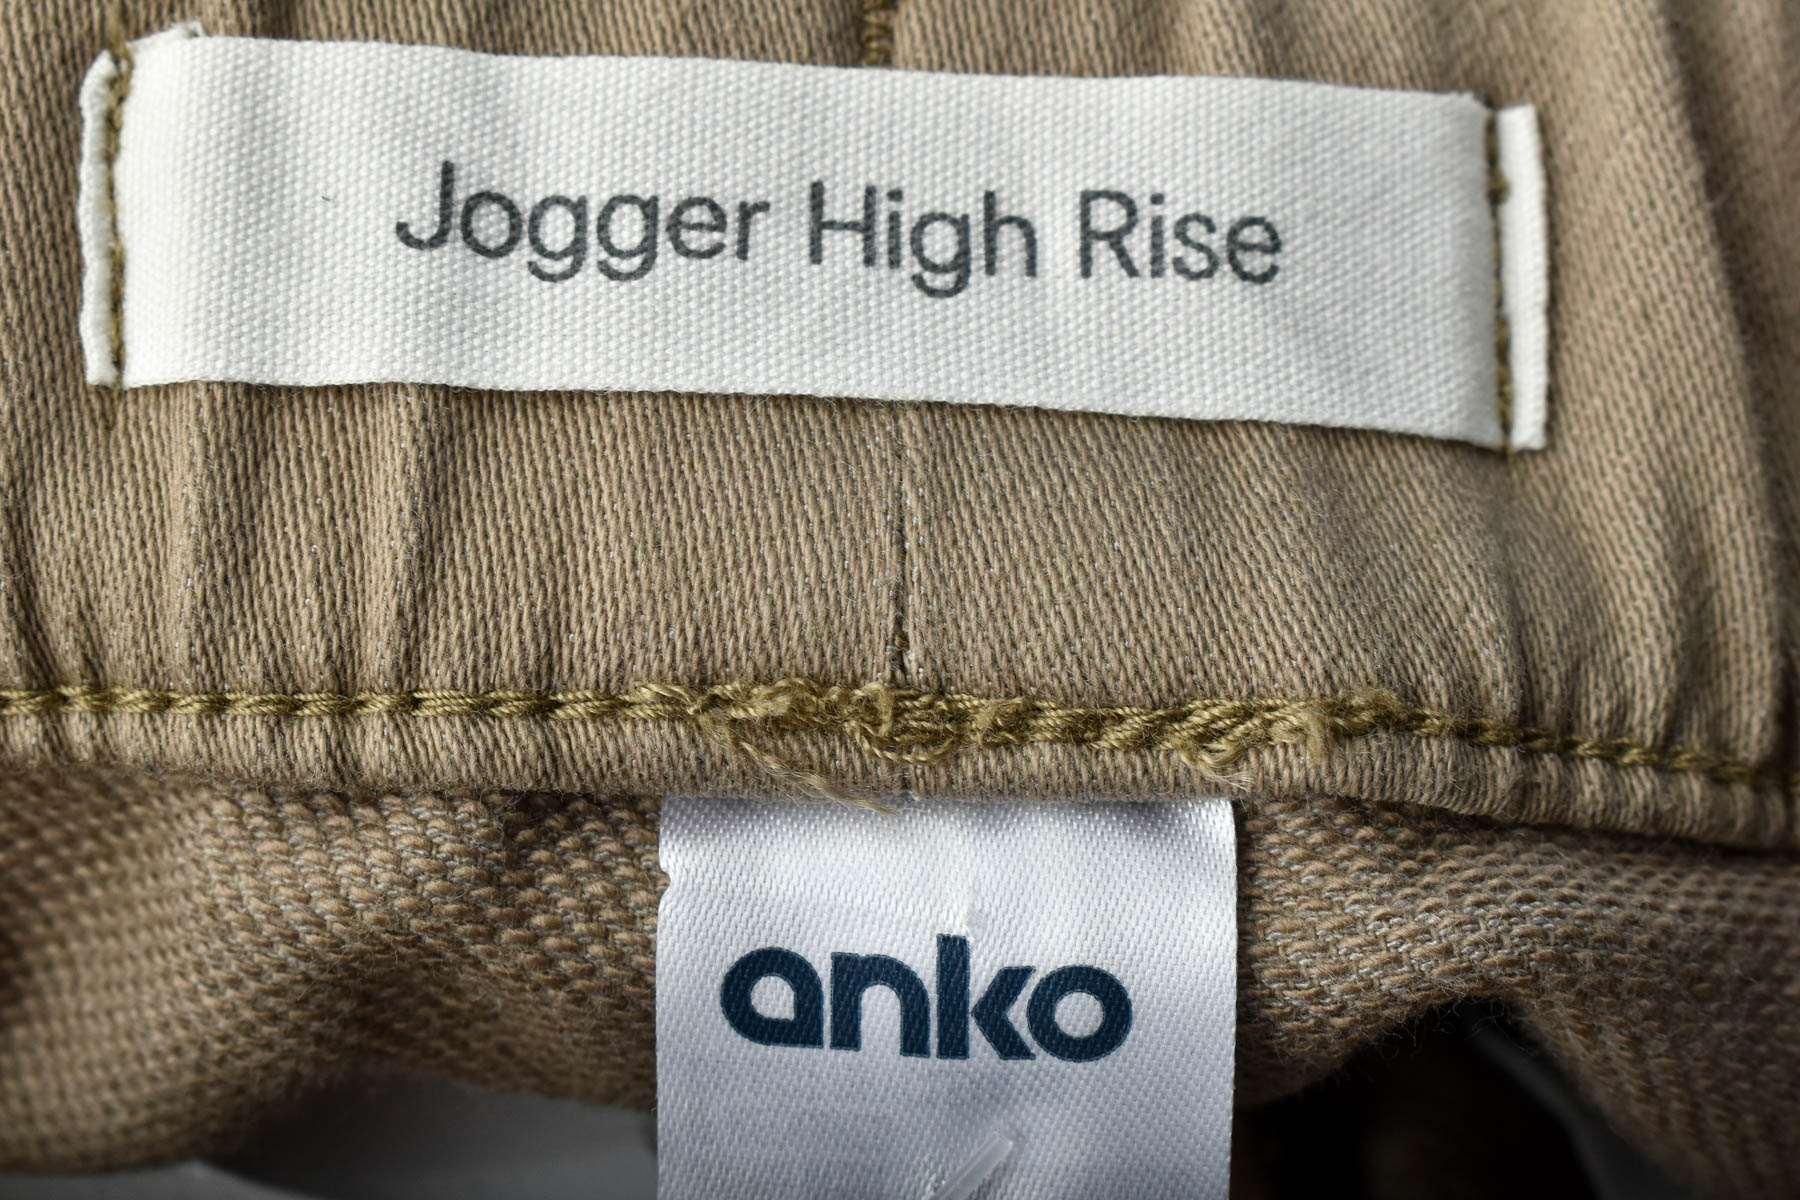 Women's trousers - Anko - 2